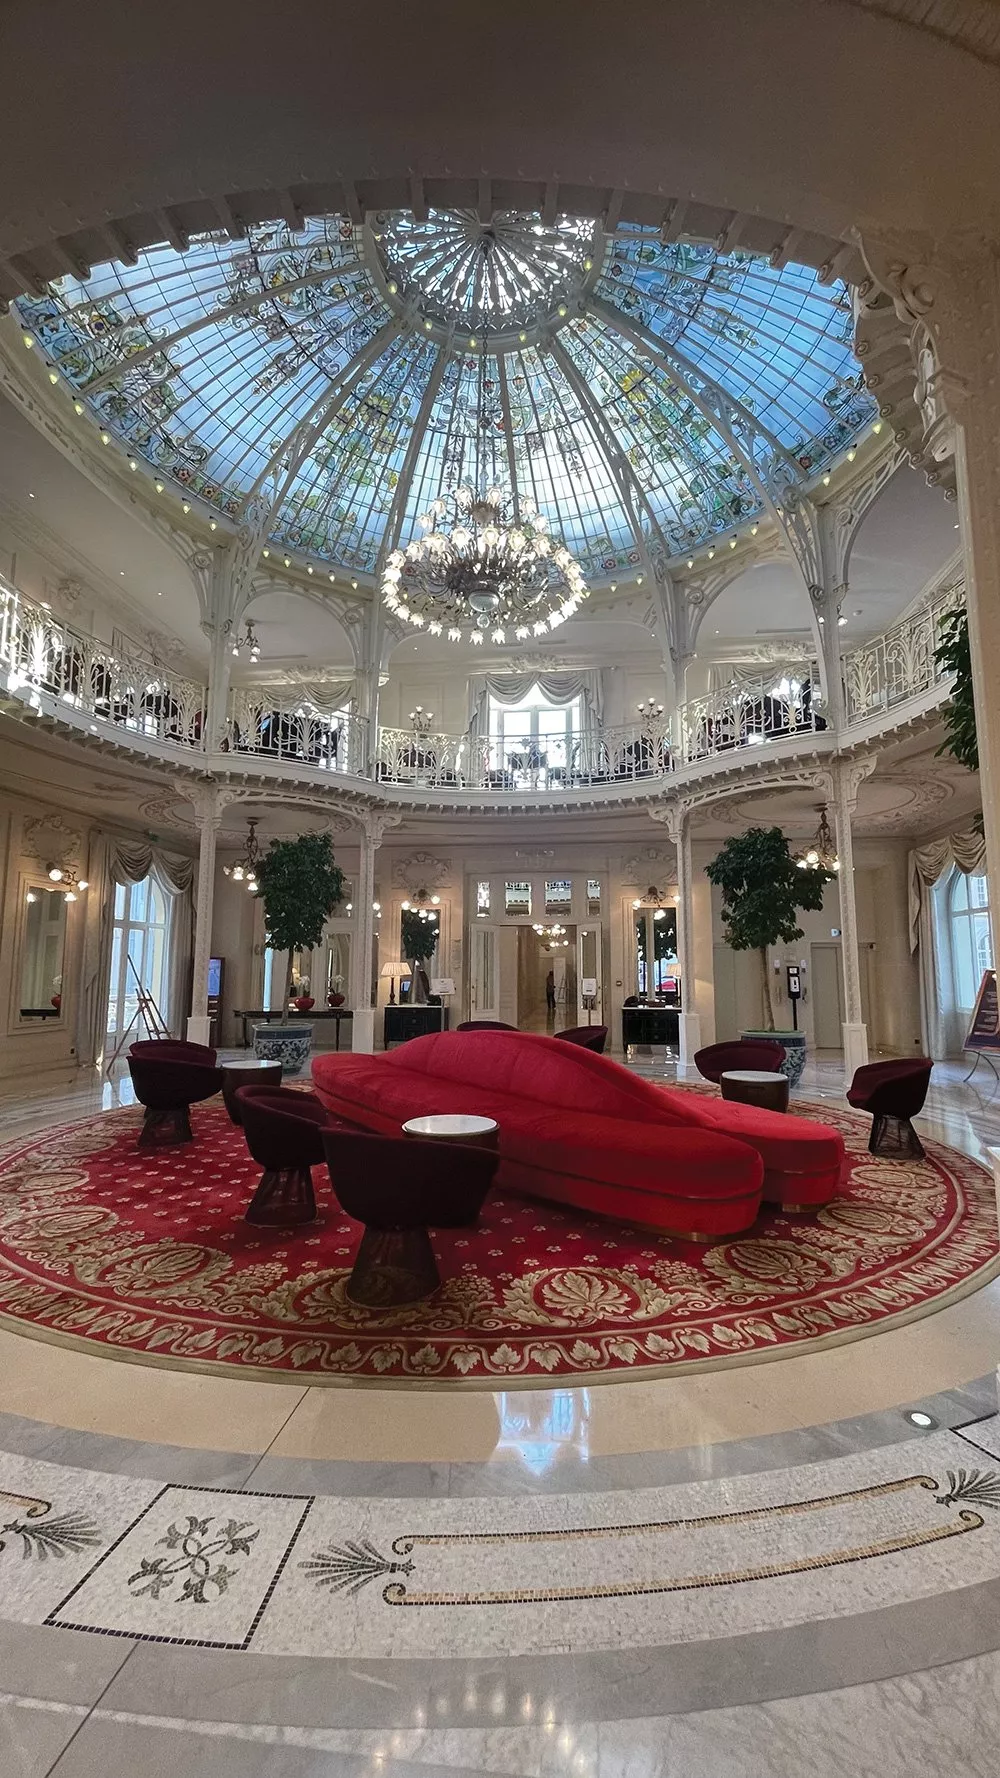 رحلتي إلى فندق Hotel Hermitage: إقامة ملكيّة في مونتي كارلو